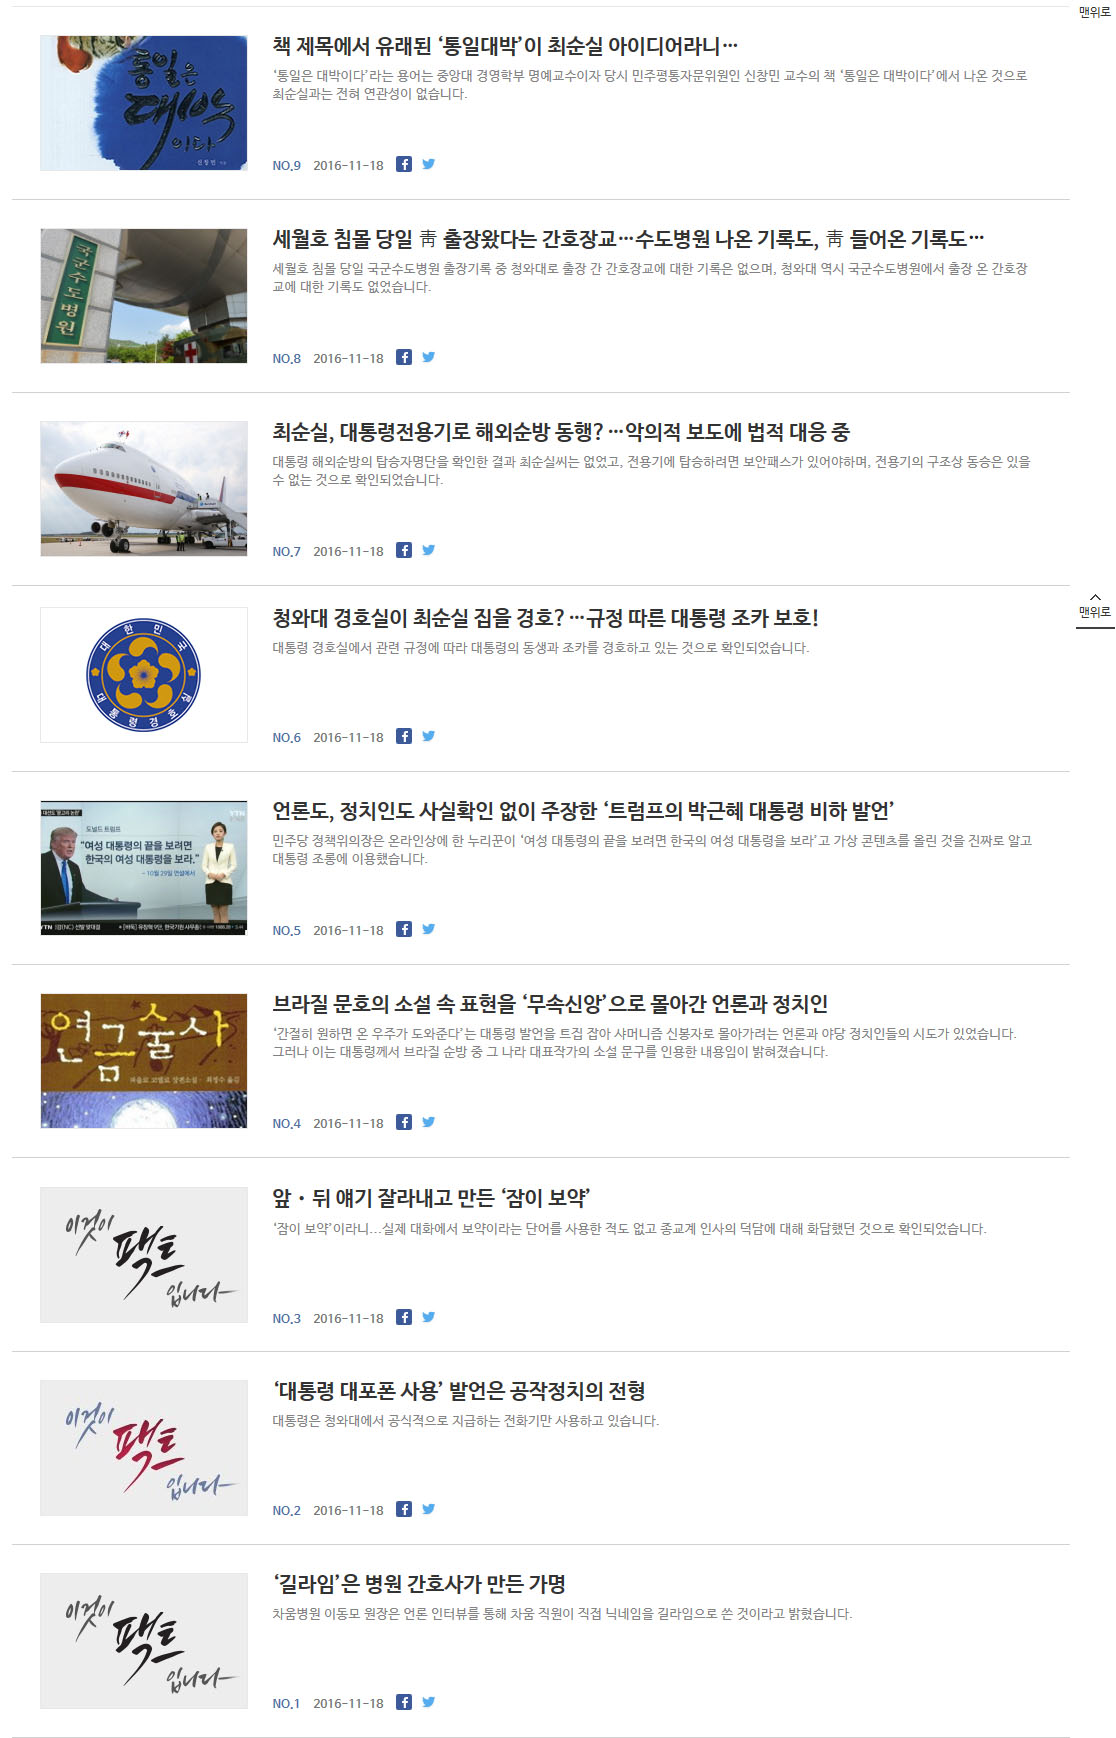 청와대는 18일 박근혜 대통령 관련 오보와 괴담을 바로잡겠다며 홈페이지에 '길라임' 닉네임이나 '통일대박' 발언 출처 등을 바로잡는 글을 올렸다.